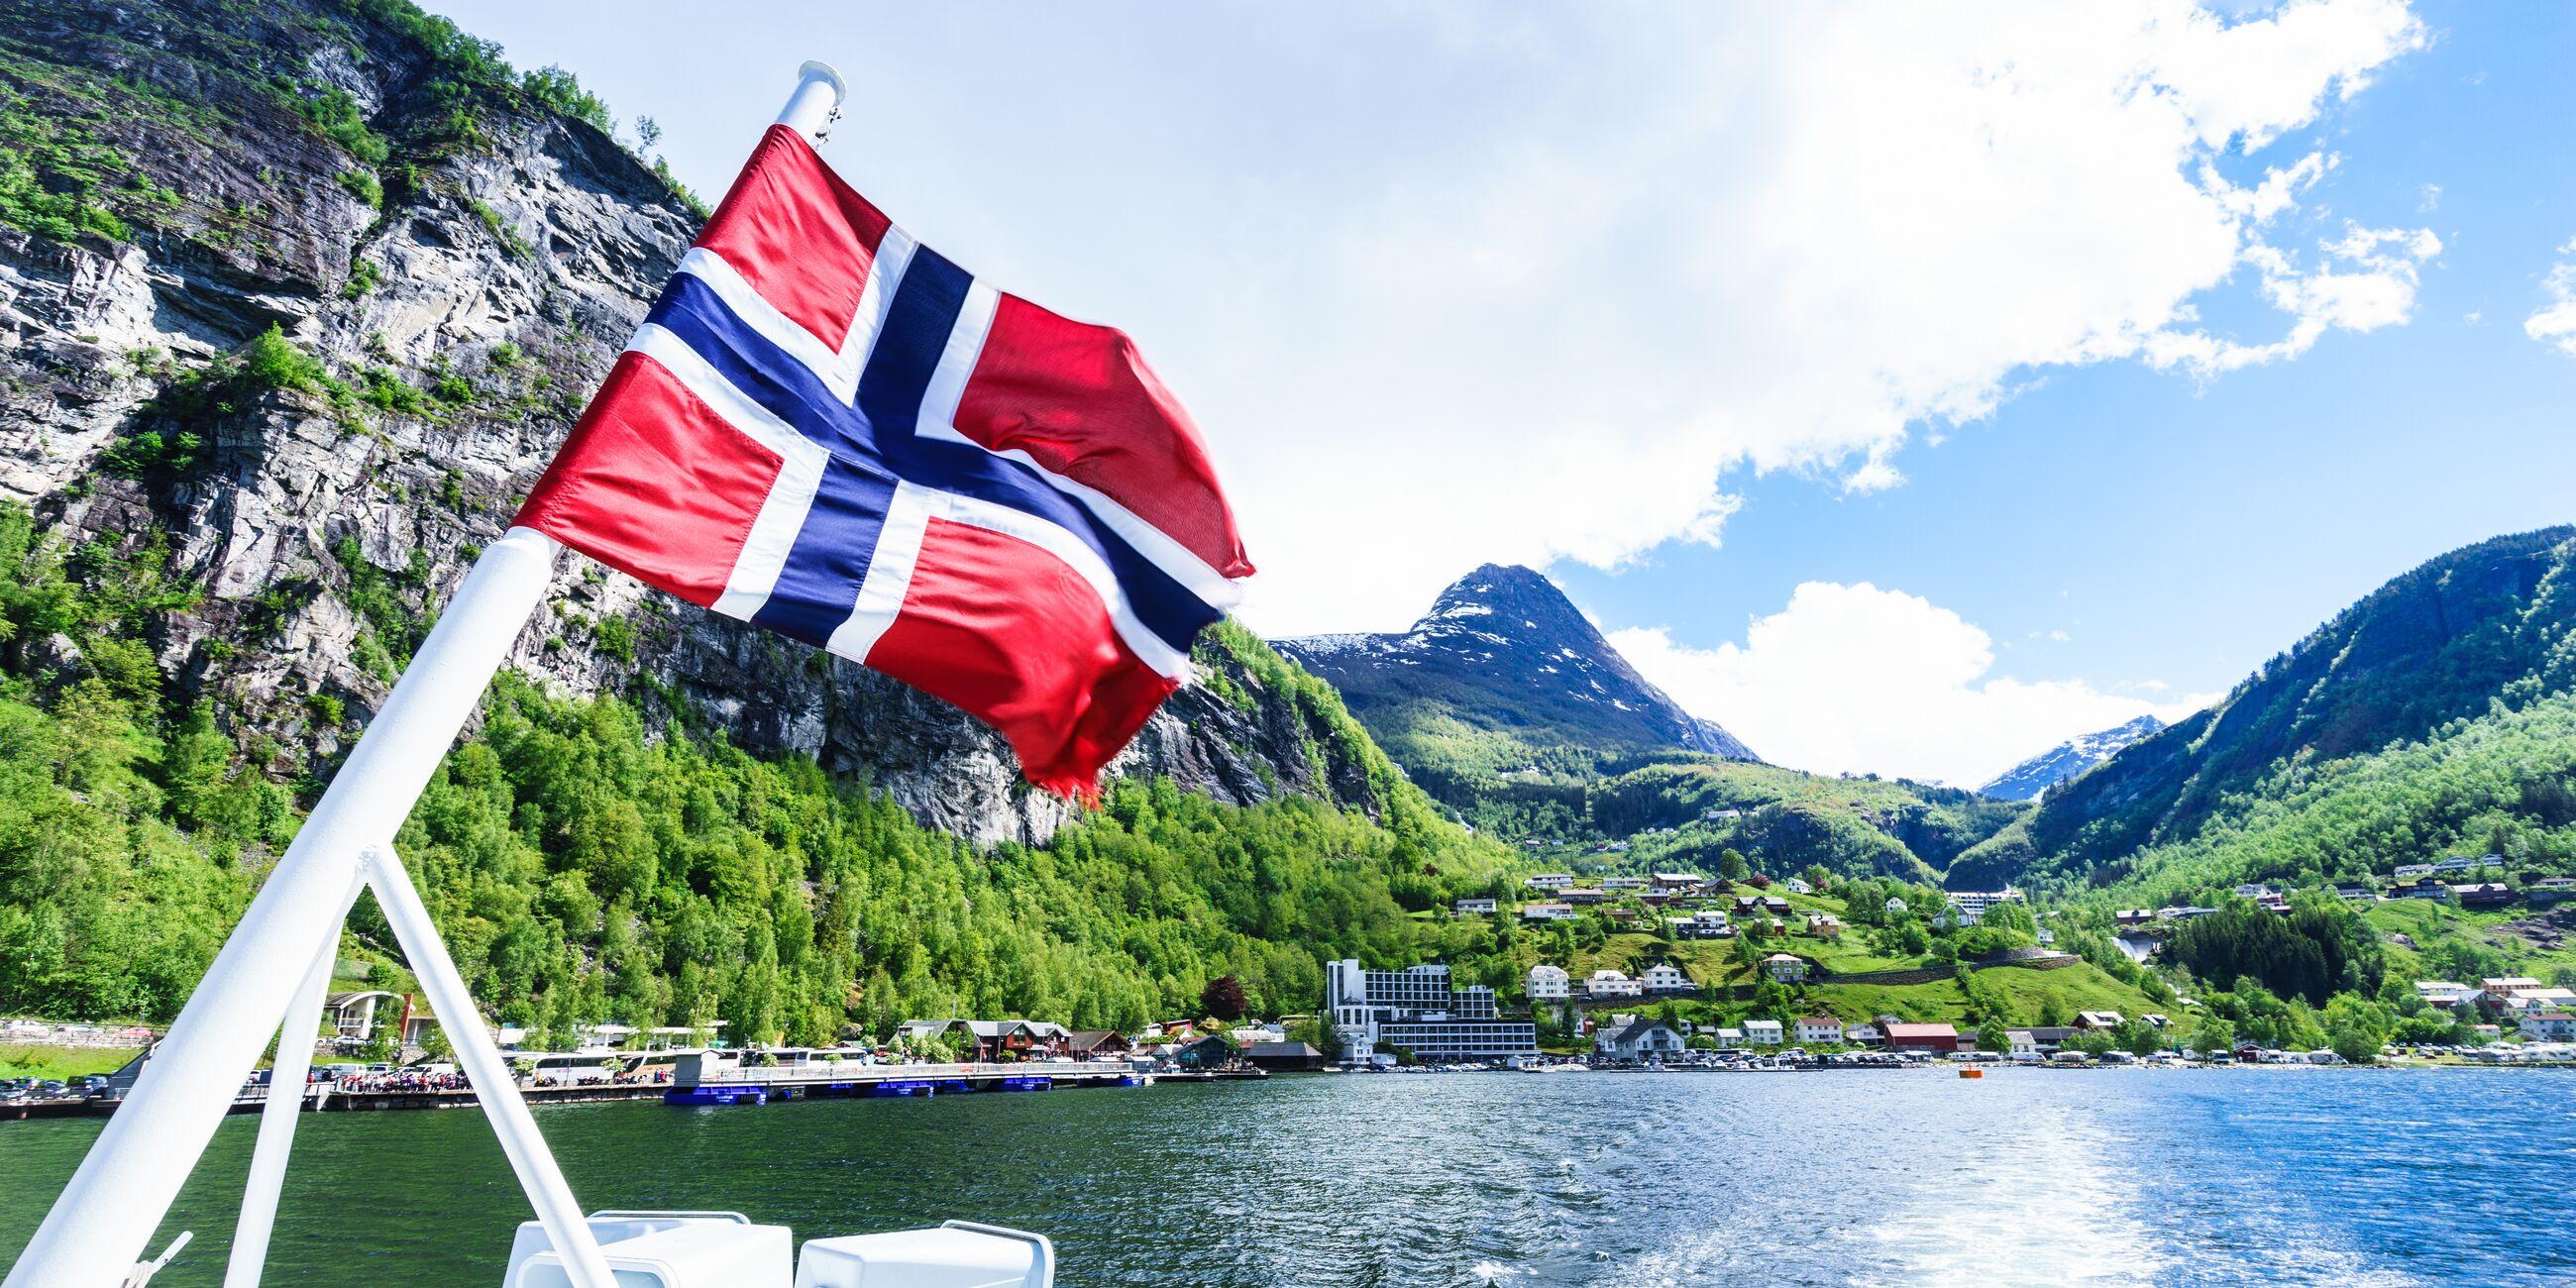 13 Unmistakable Norwegian Habits Life In Norway, 53% OFF